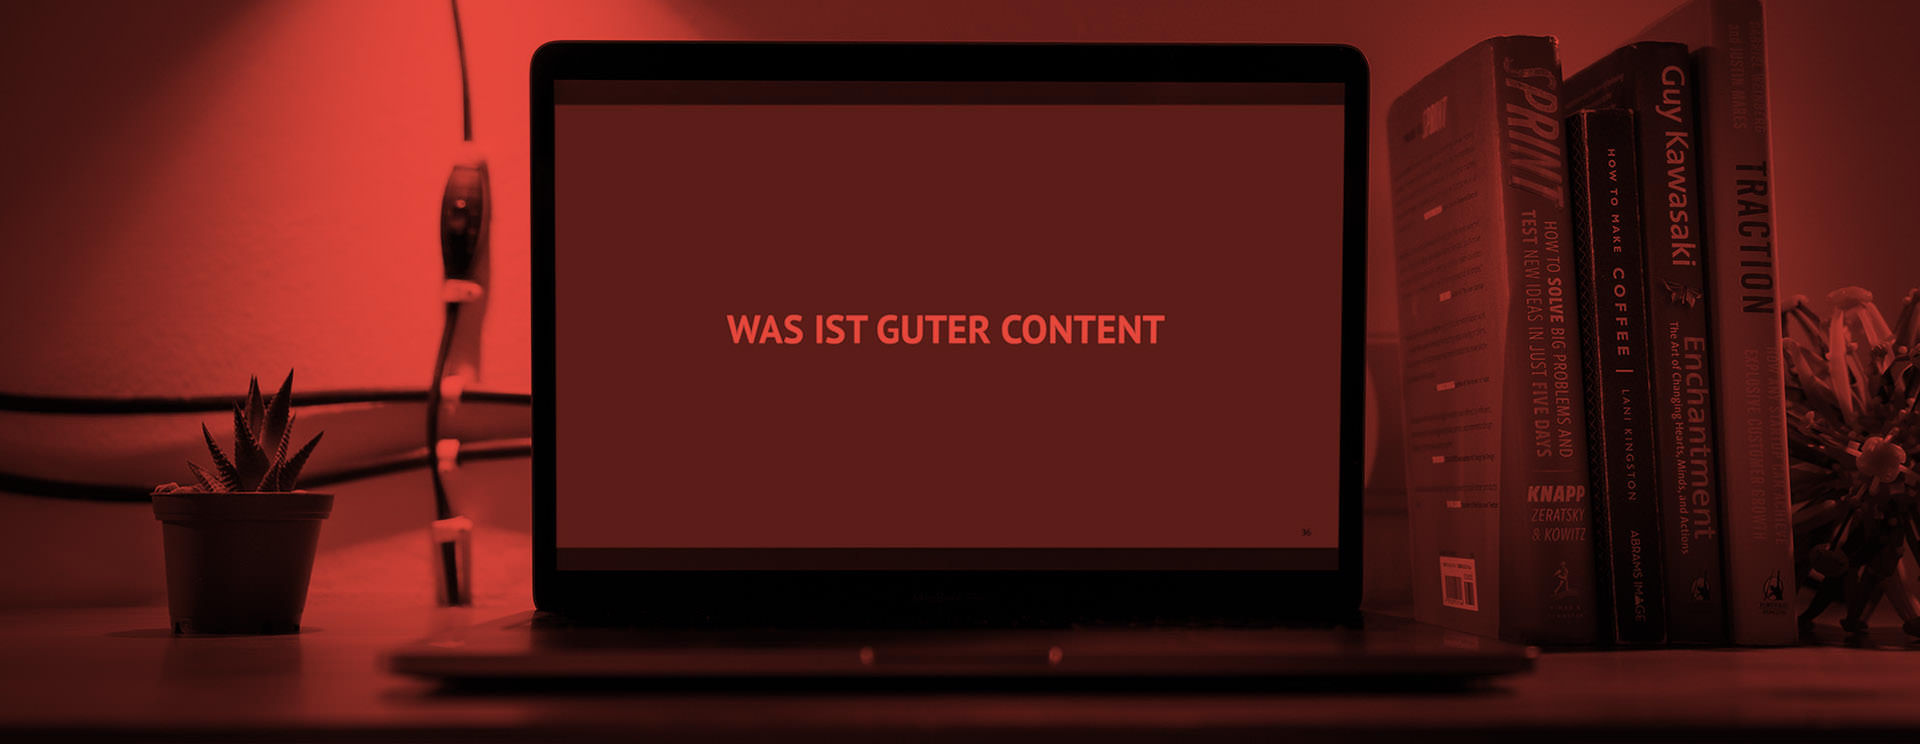 Was ist guter Content Slogan auf Laptop mit rotem Filter